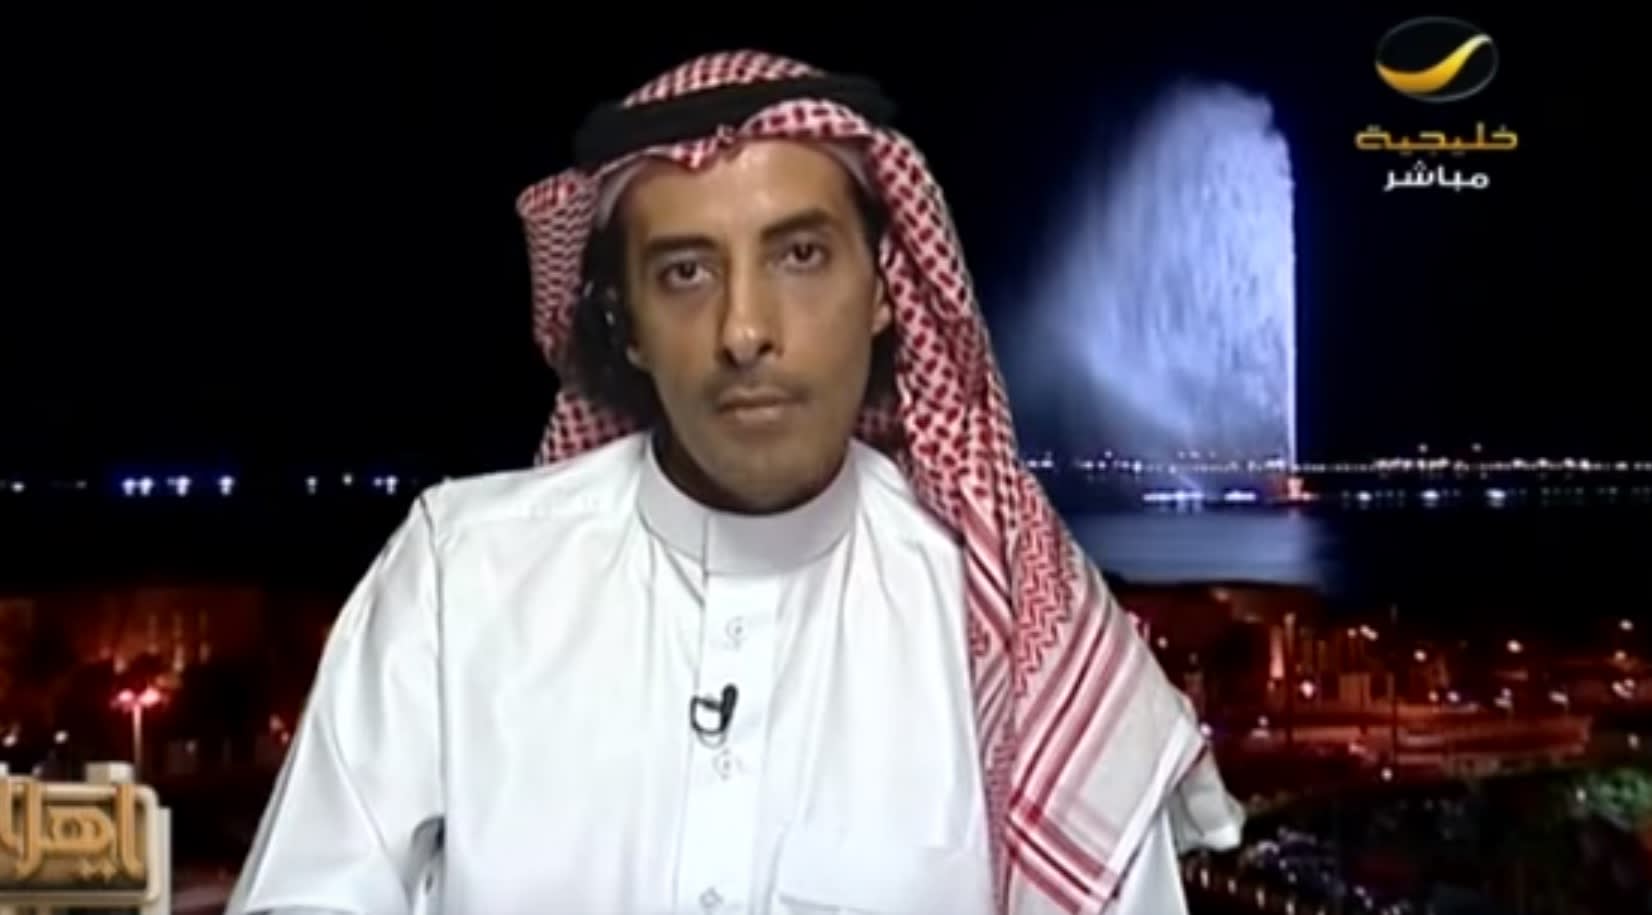 كاتب سعودي: مقالي حول ذبح الأضحية ليس معارضة للسنة.. ووزارة الثقافة: لا تخض في الفتاوى الشرعية